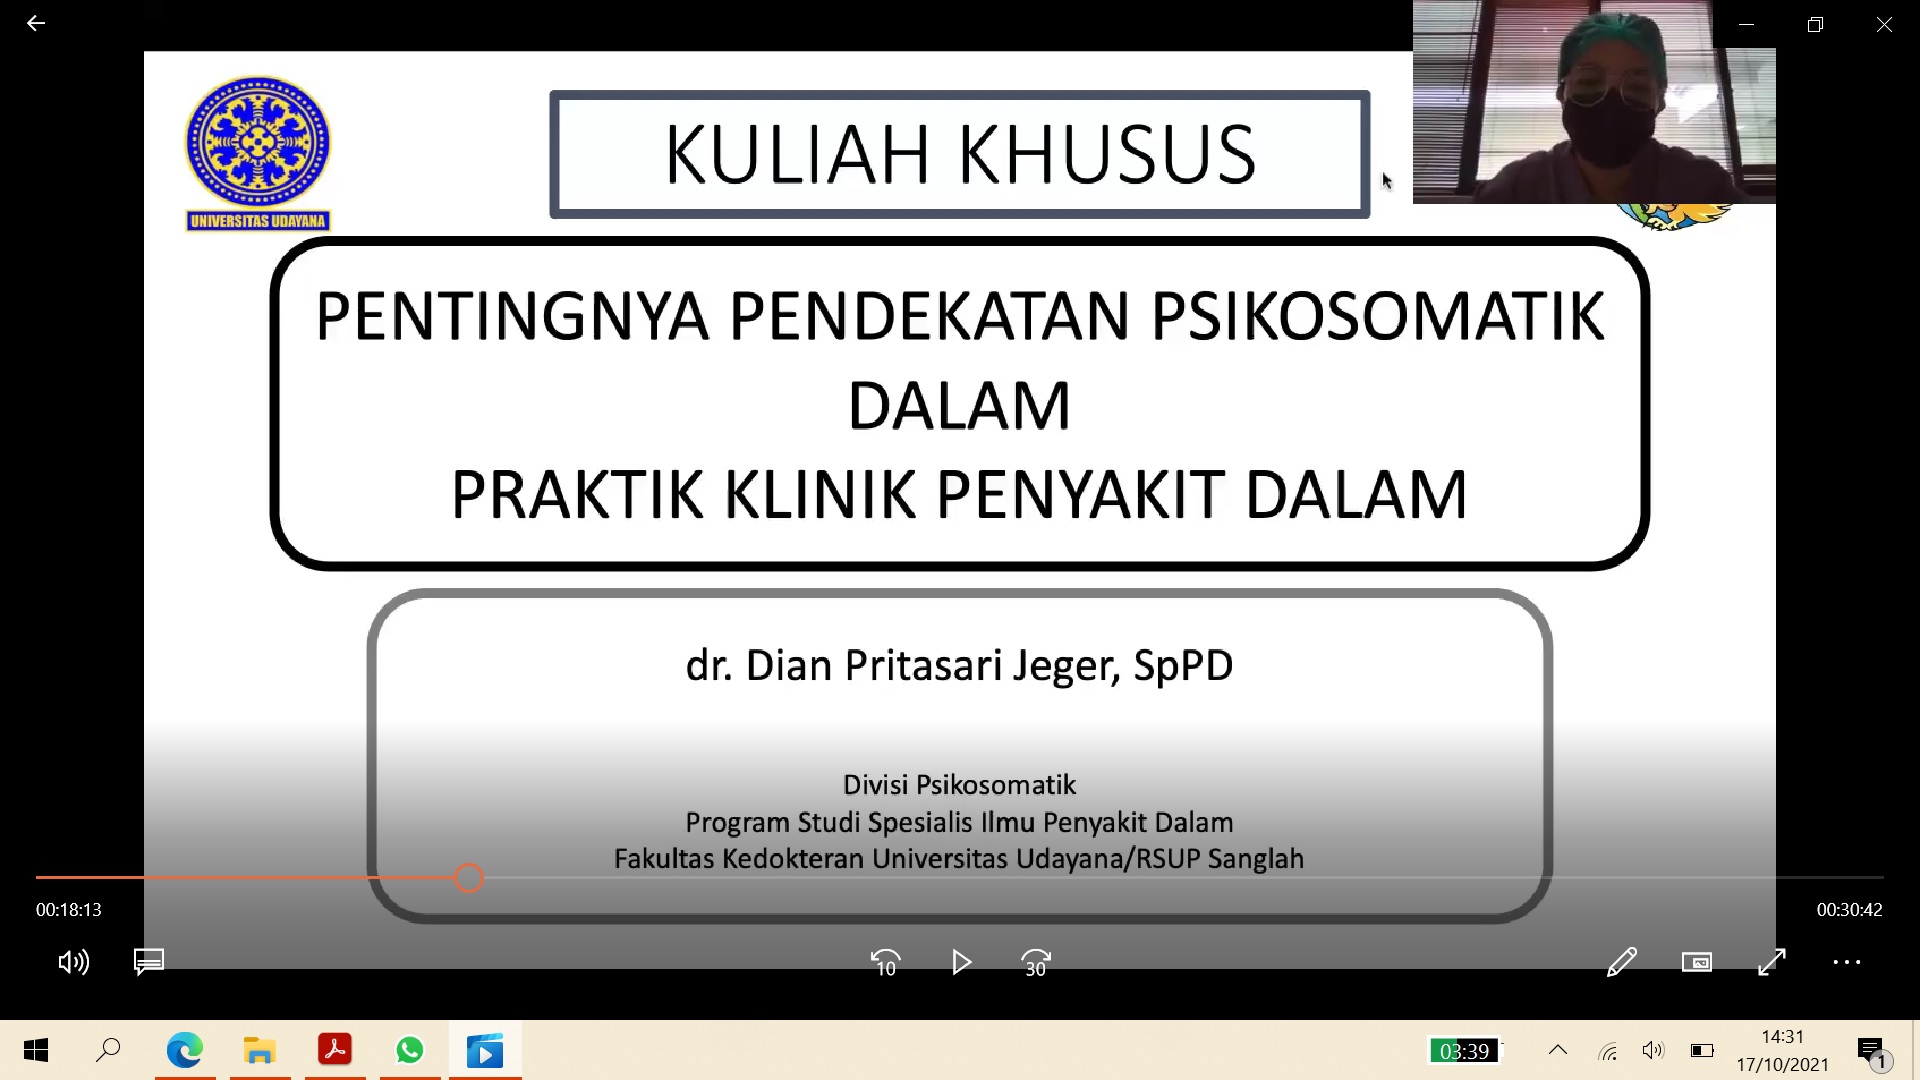 KULIAH KHUSUS OLEH dr. Dian Pritasari Jeger, Sp.PD